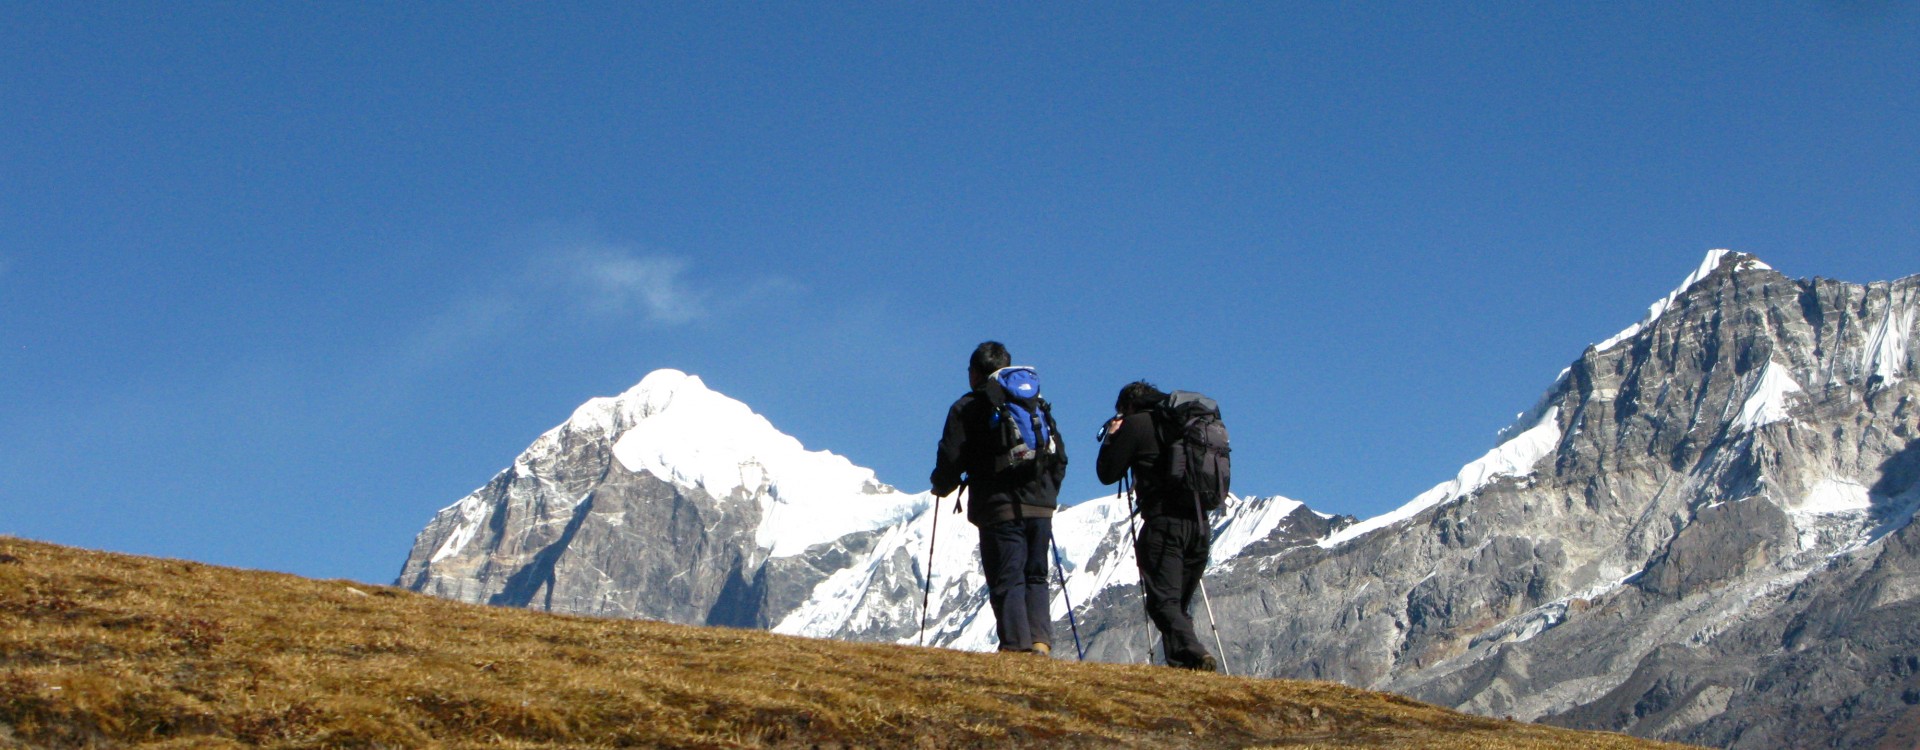 Darjeeling-Singelila Range Trekking with Sikkim